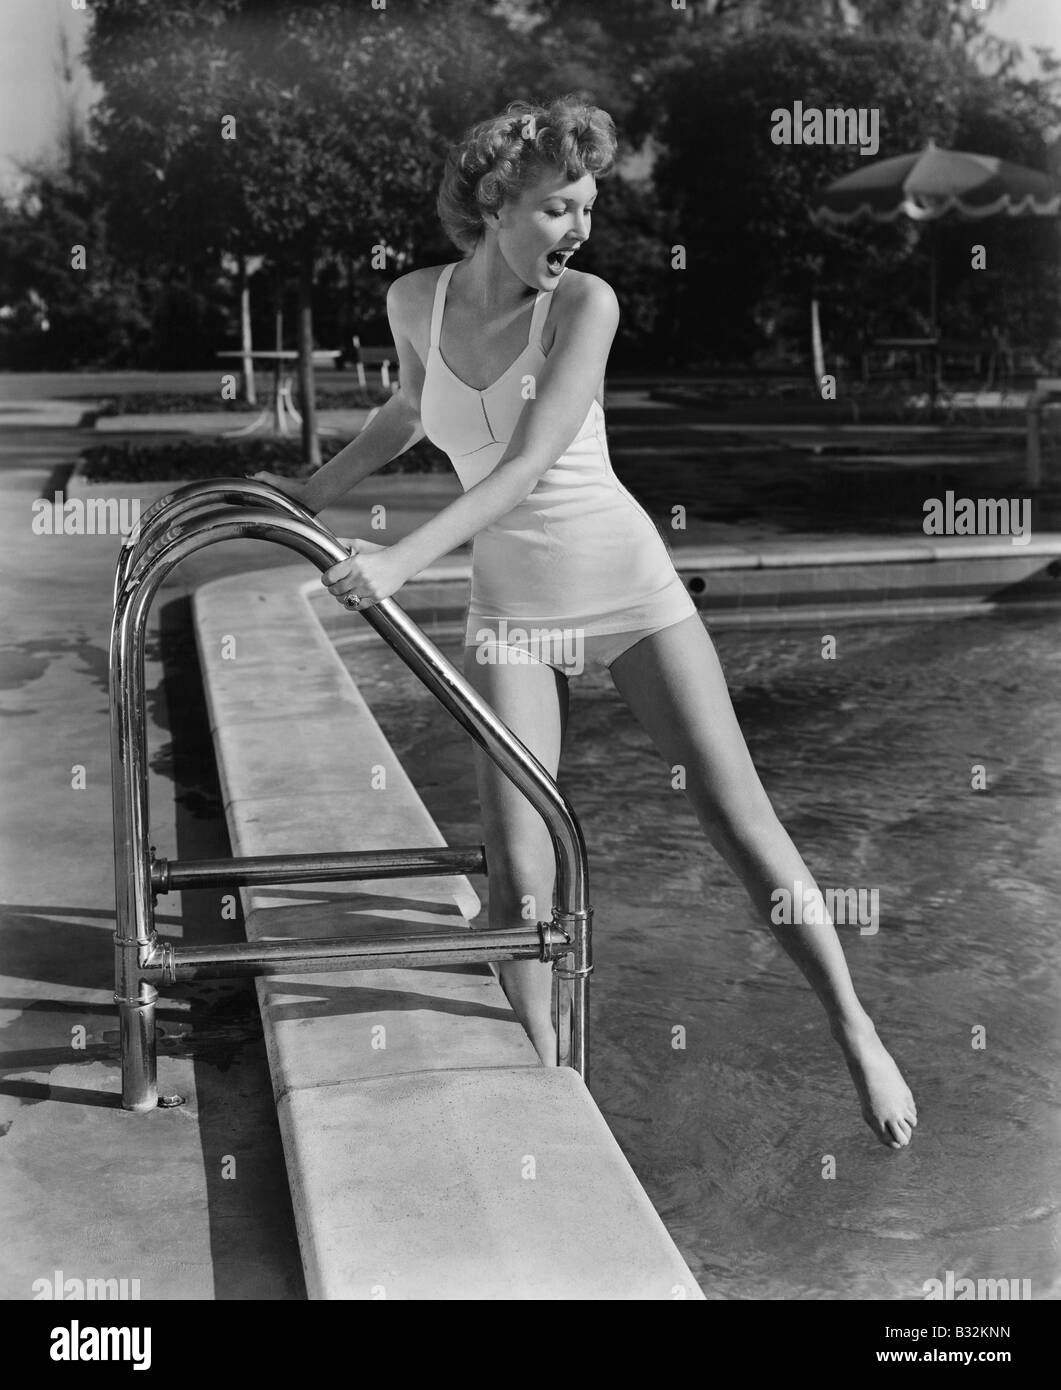 Femme trempant les orteils dans une piscine extérieure Banque D'Images